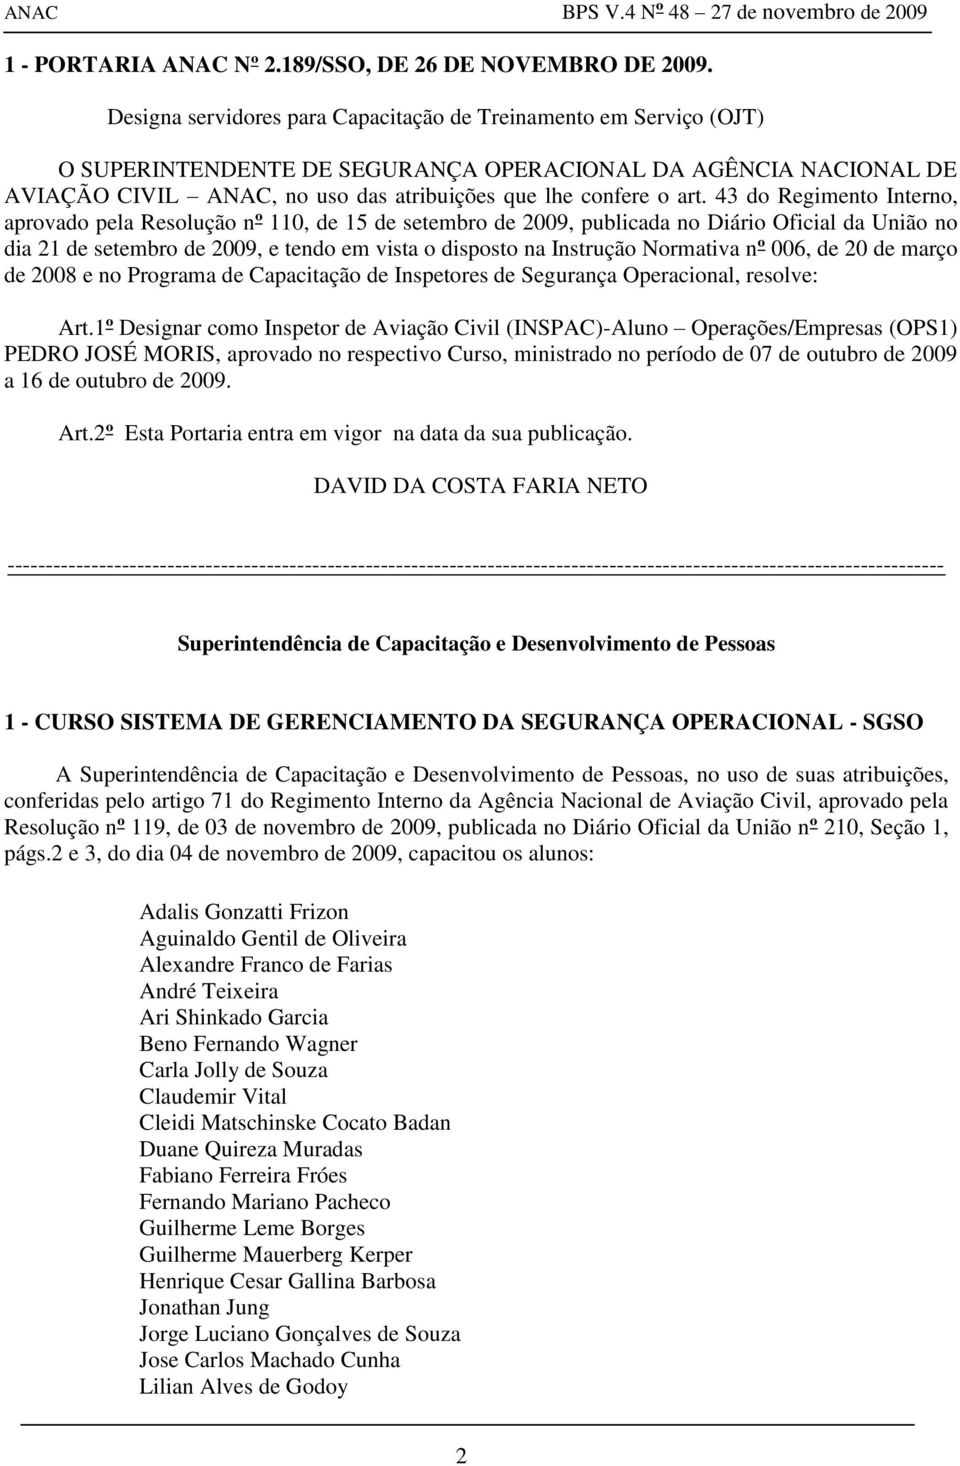 43 do Regimento Interno, aprovado pela Resolução nº 110, de 15 de setembro de 2009, publicada no Diário Oficial da União no dia 21 de setembro de 2009, e tendo em vista o disposto na Instrução